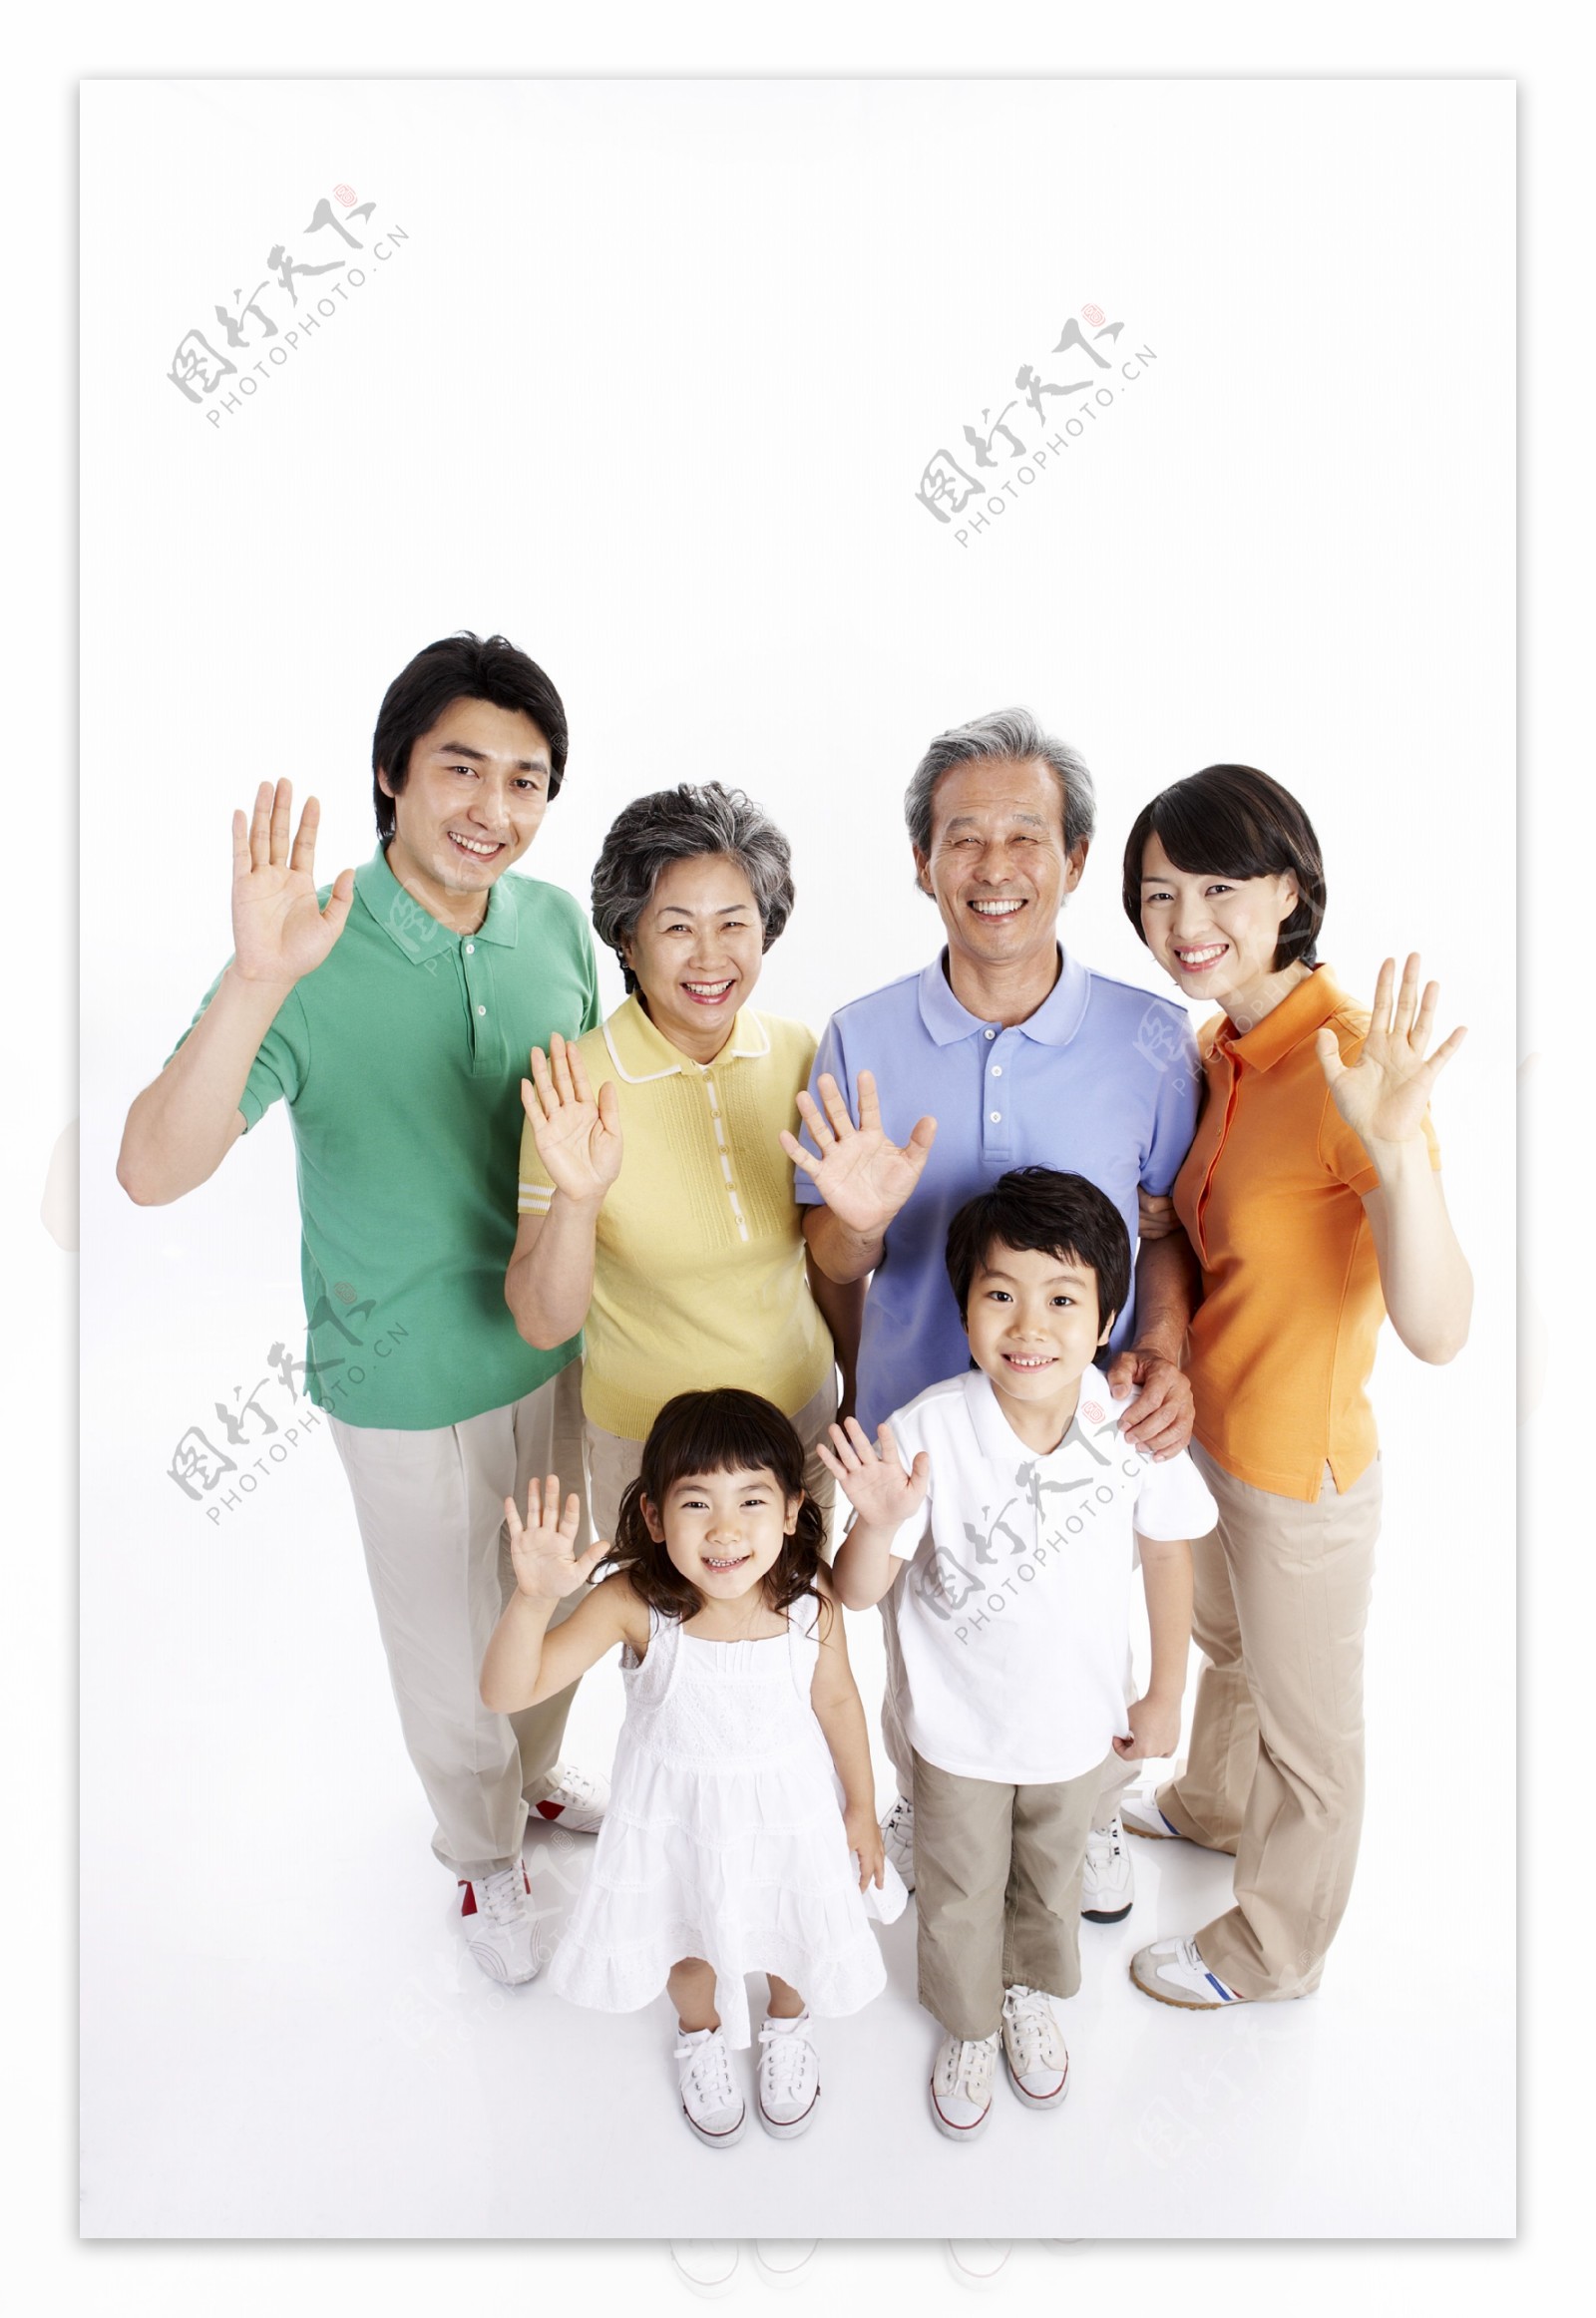 幸福快乐的一家人在挥手图片